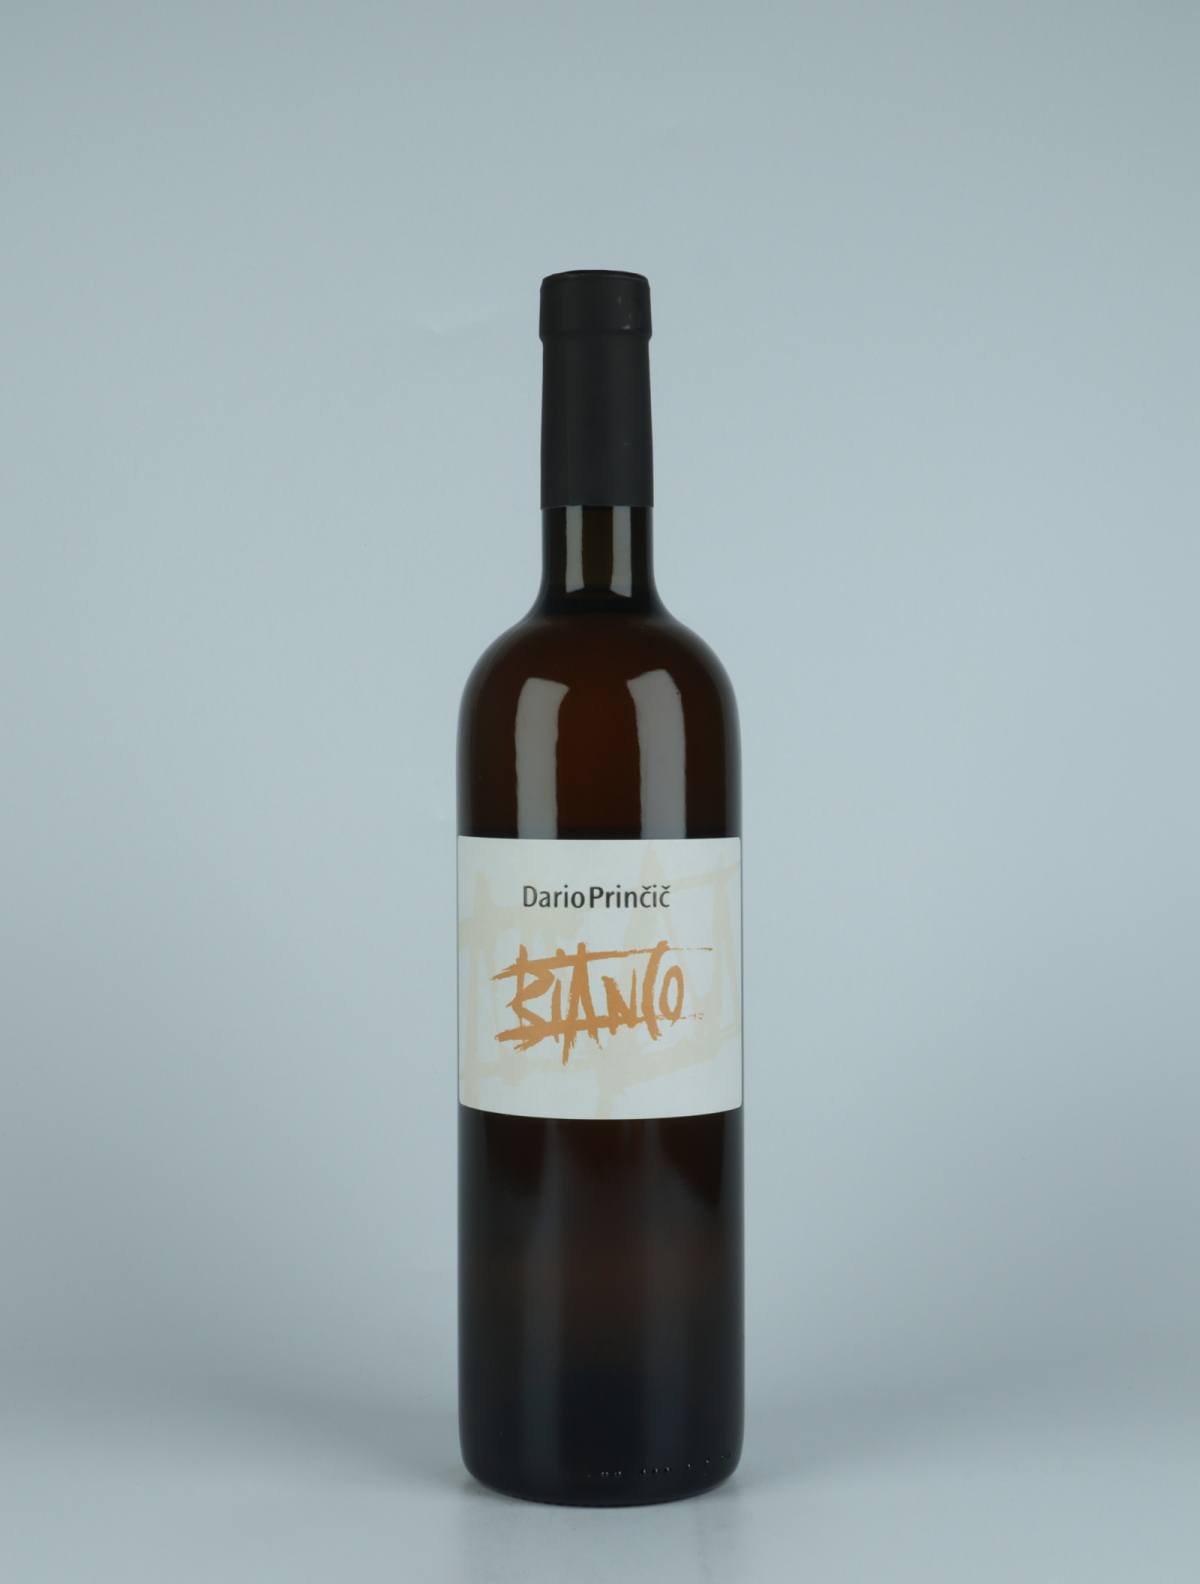 En flaske 2020 Bianco Orange vin fra Dario Princic, Friuli i Italien